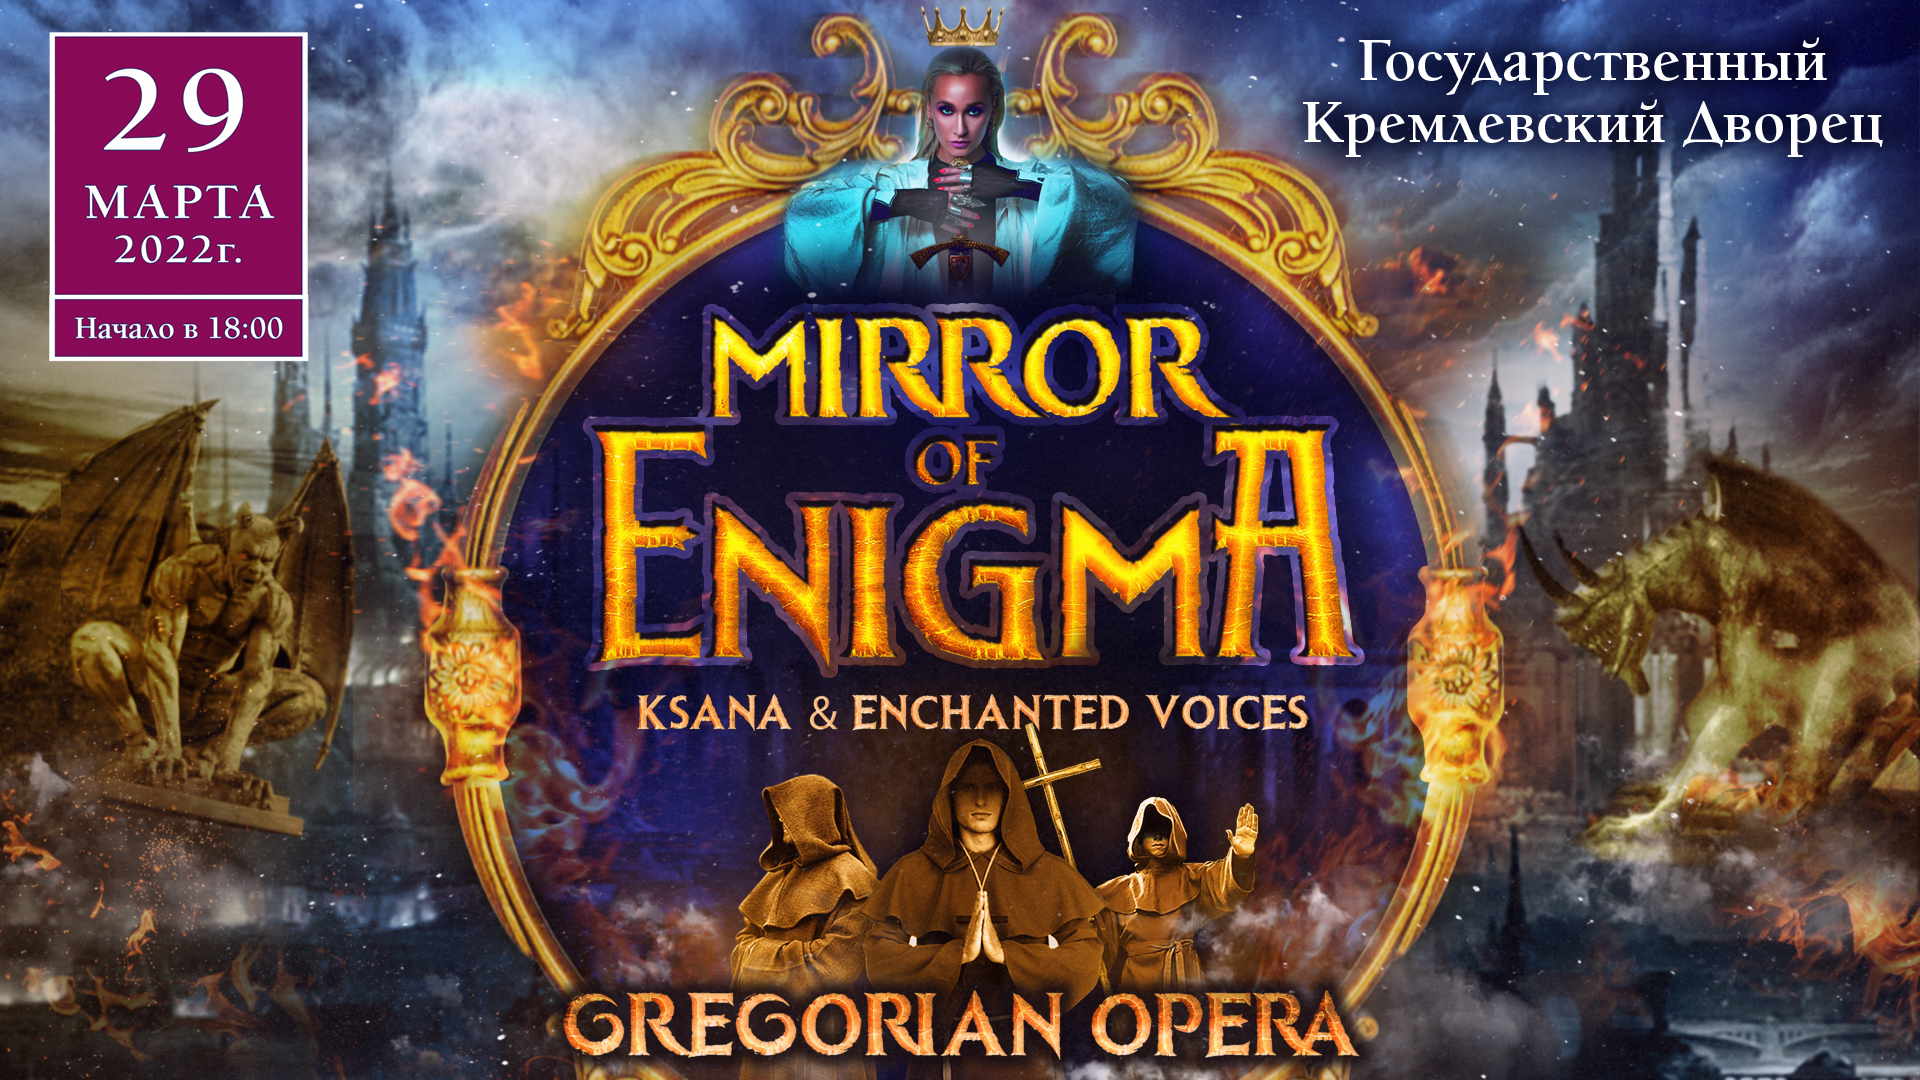 "MIRROR OF ENIGMA" GREGORIAN OPERA. KSANA & ENCHANTED VOICES